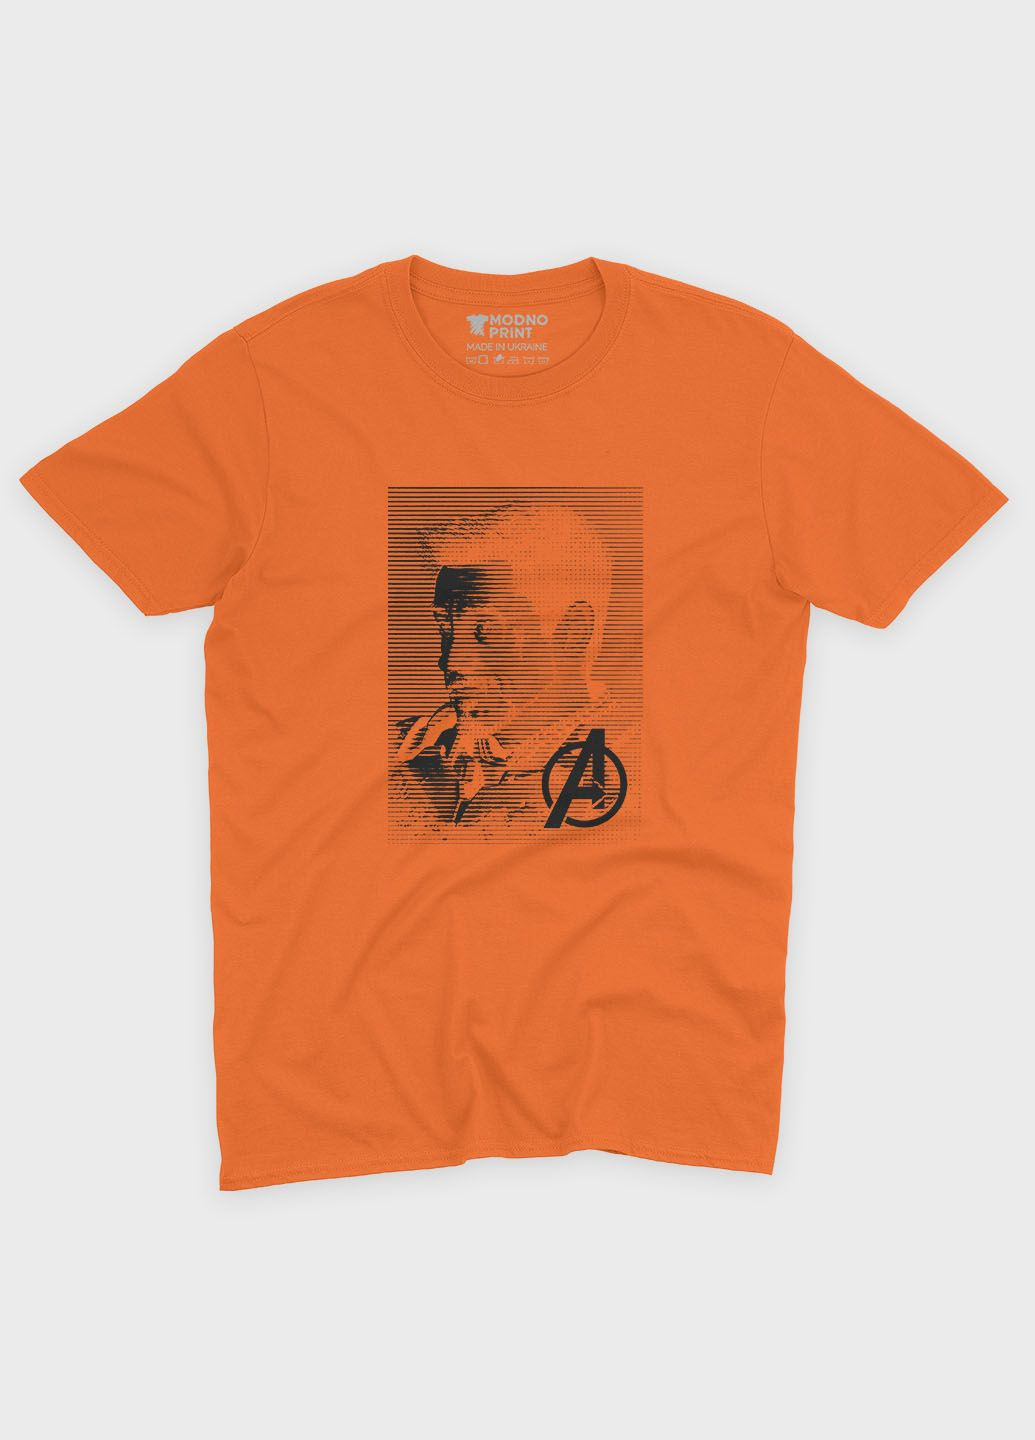 Помаранчева демісезонна футболка для хлопчика з принтом супергероя - залізна людина (ts001-1-ora-006-016-026-b) Modno